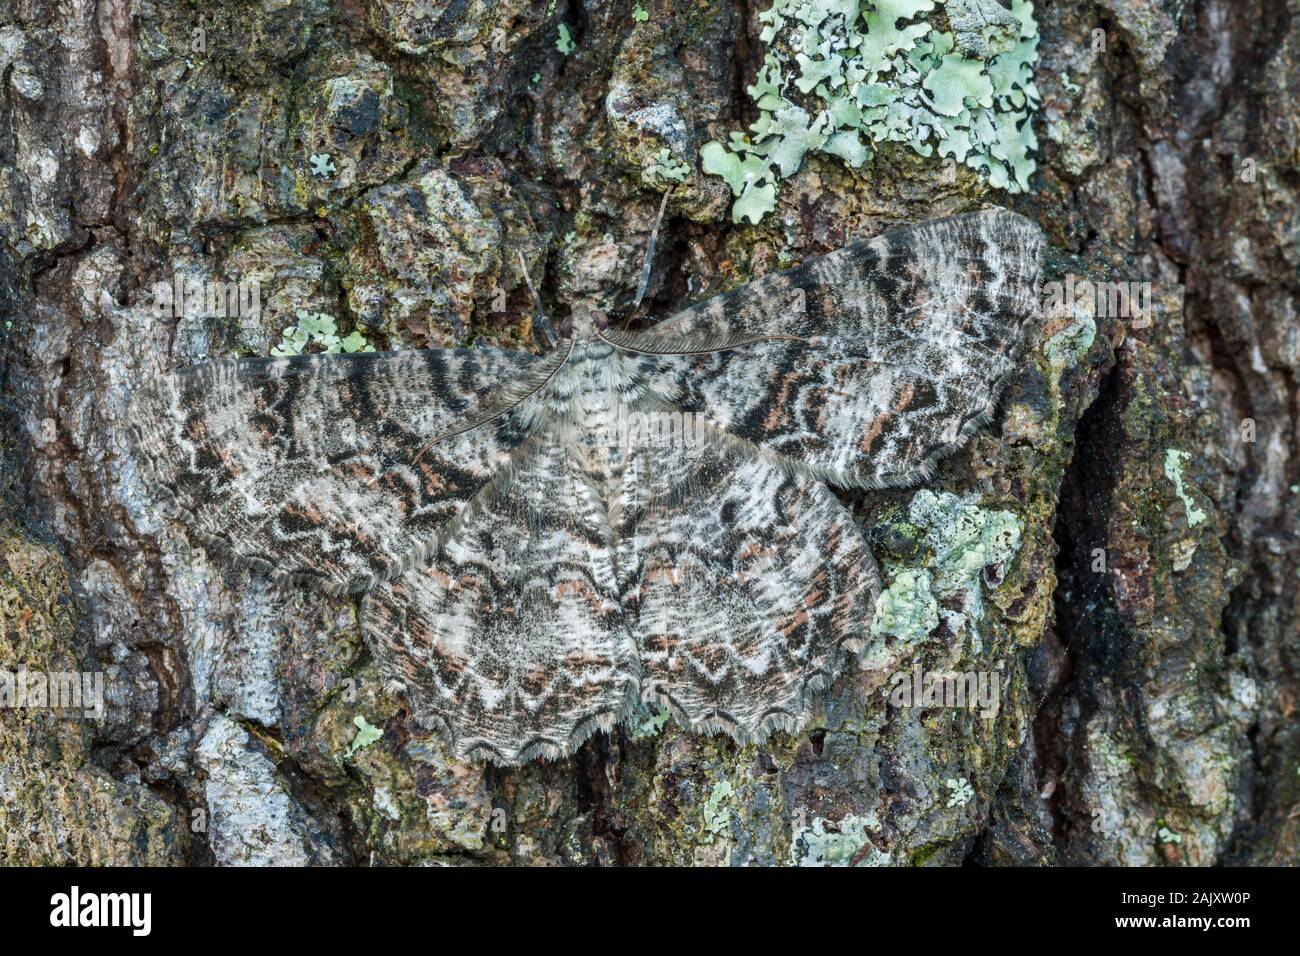 Tuliptree Epimecis hortaria (Beauté) papillon avec ailes déployées sur l'écorce couverte de lichen. Préserver la nature Run Reed, comté de Lancaster, PA, au printemps. Banque D'Images